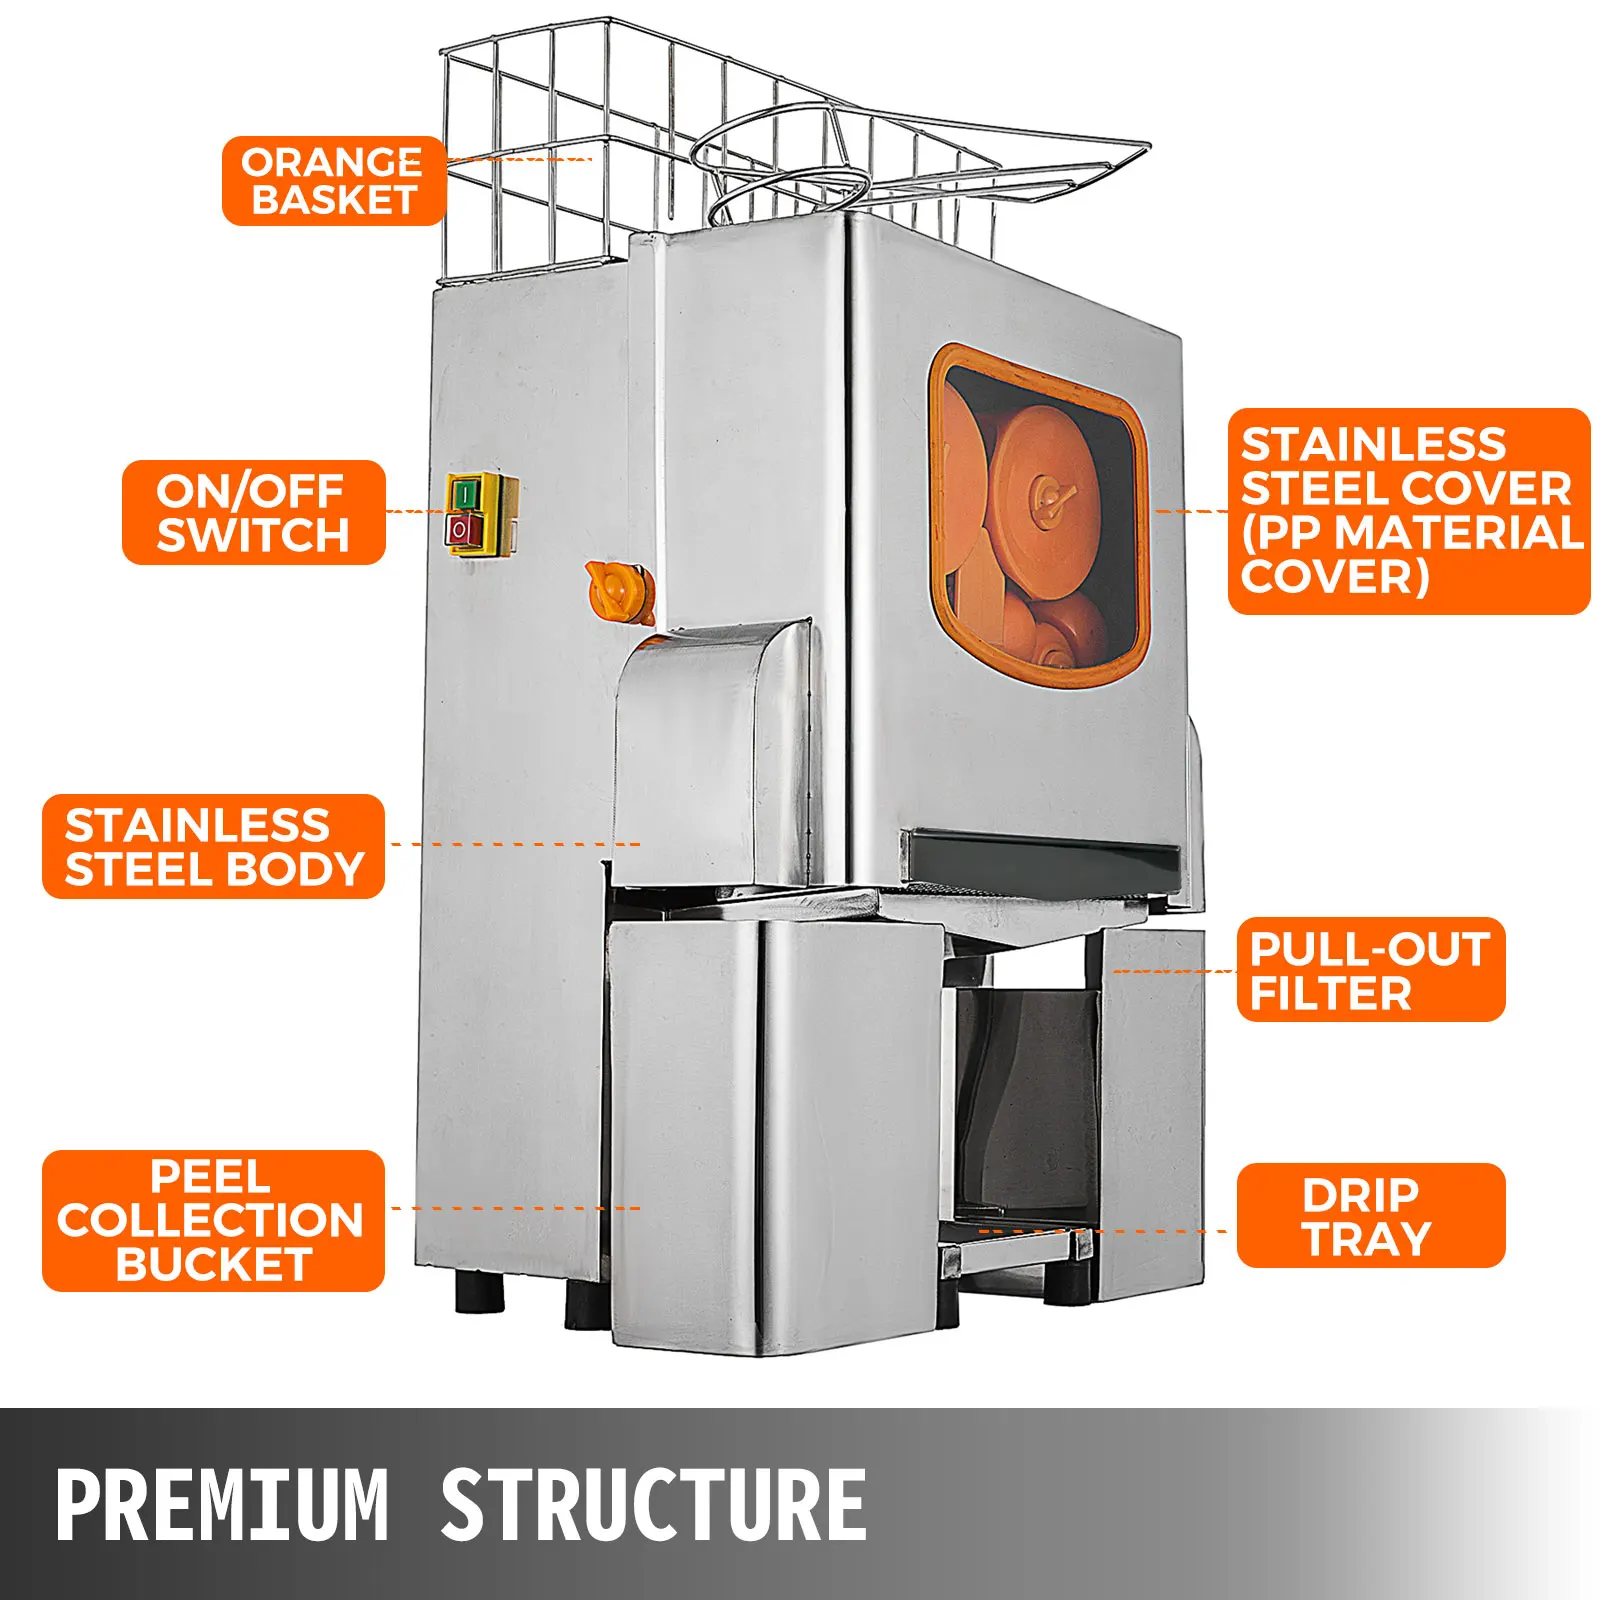 VEVOR-ماكينة عصارة تجارية ، عصارة برتقالية لمدة 22-30 في الدقيقة ، مستخرج عصير كهربائي ، مع صندوق تصفية قابل للسحب ، 120 واط